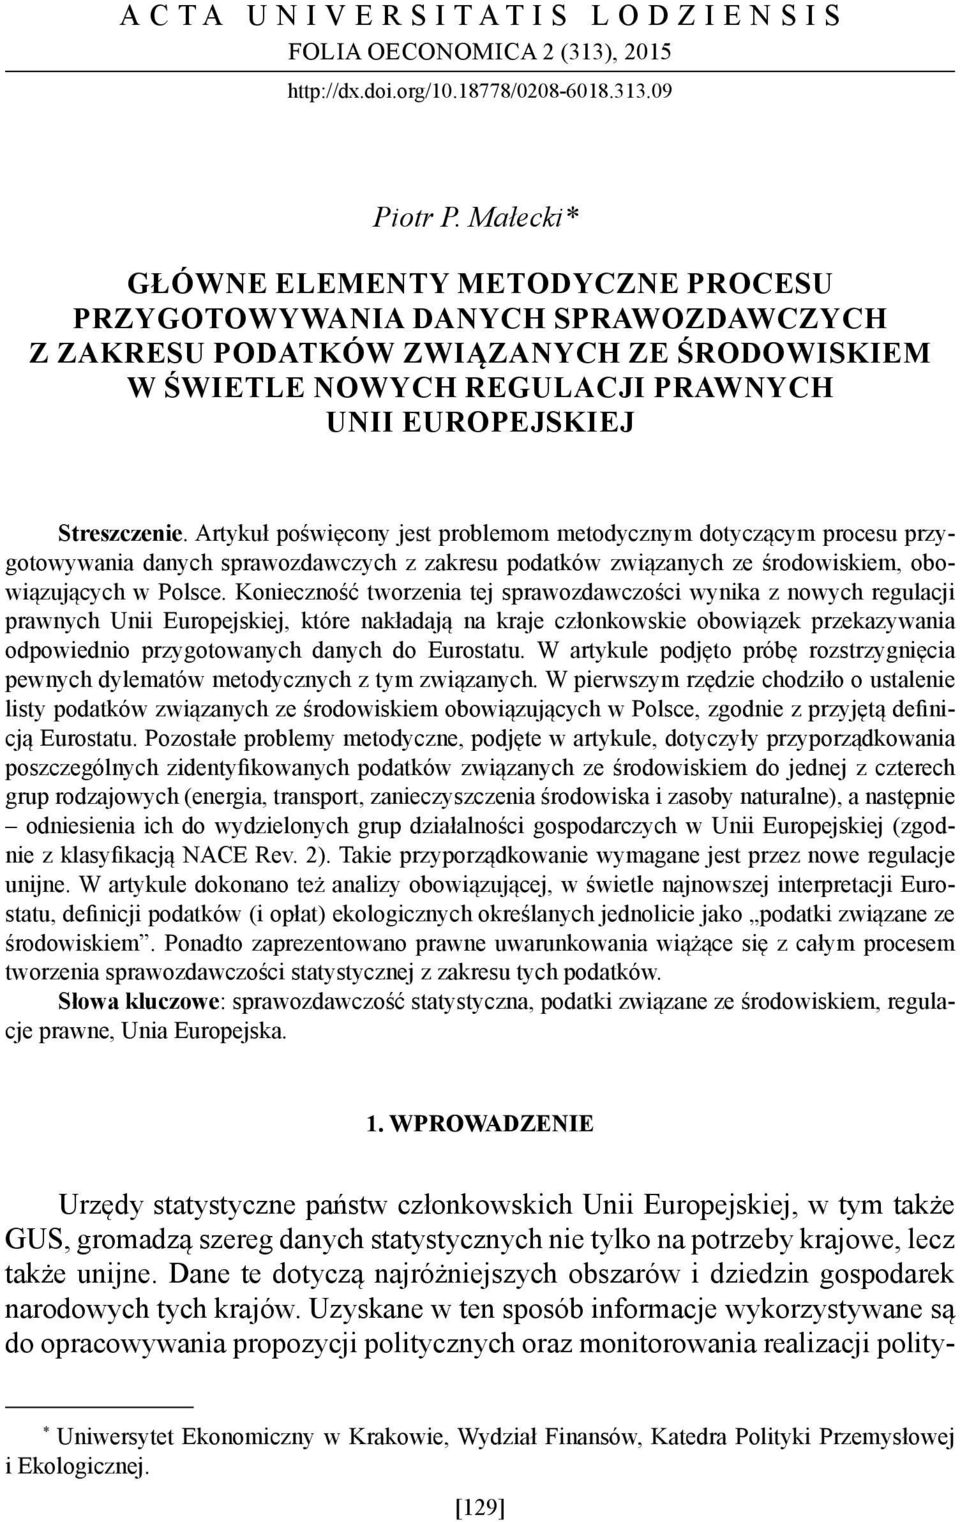 Artykuł poświęcony jest problemom metodycznym dotyczącym procesu przygotowywania danych sprawozdawczych z zakresu podatków związanych ze środowiskiem, obowiązujących w Polsce.